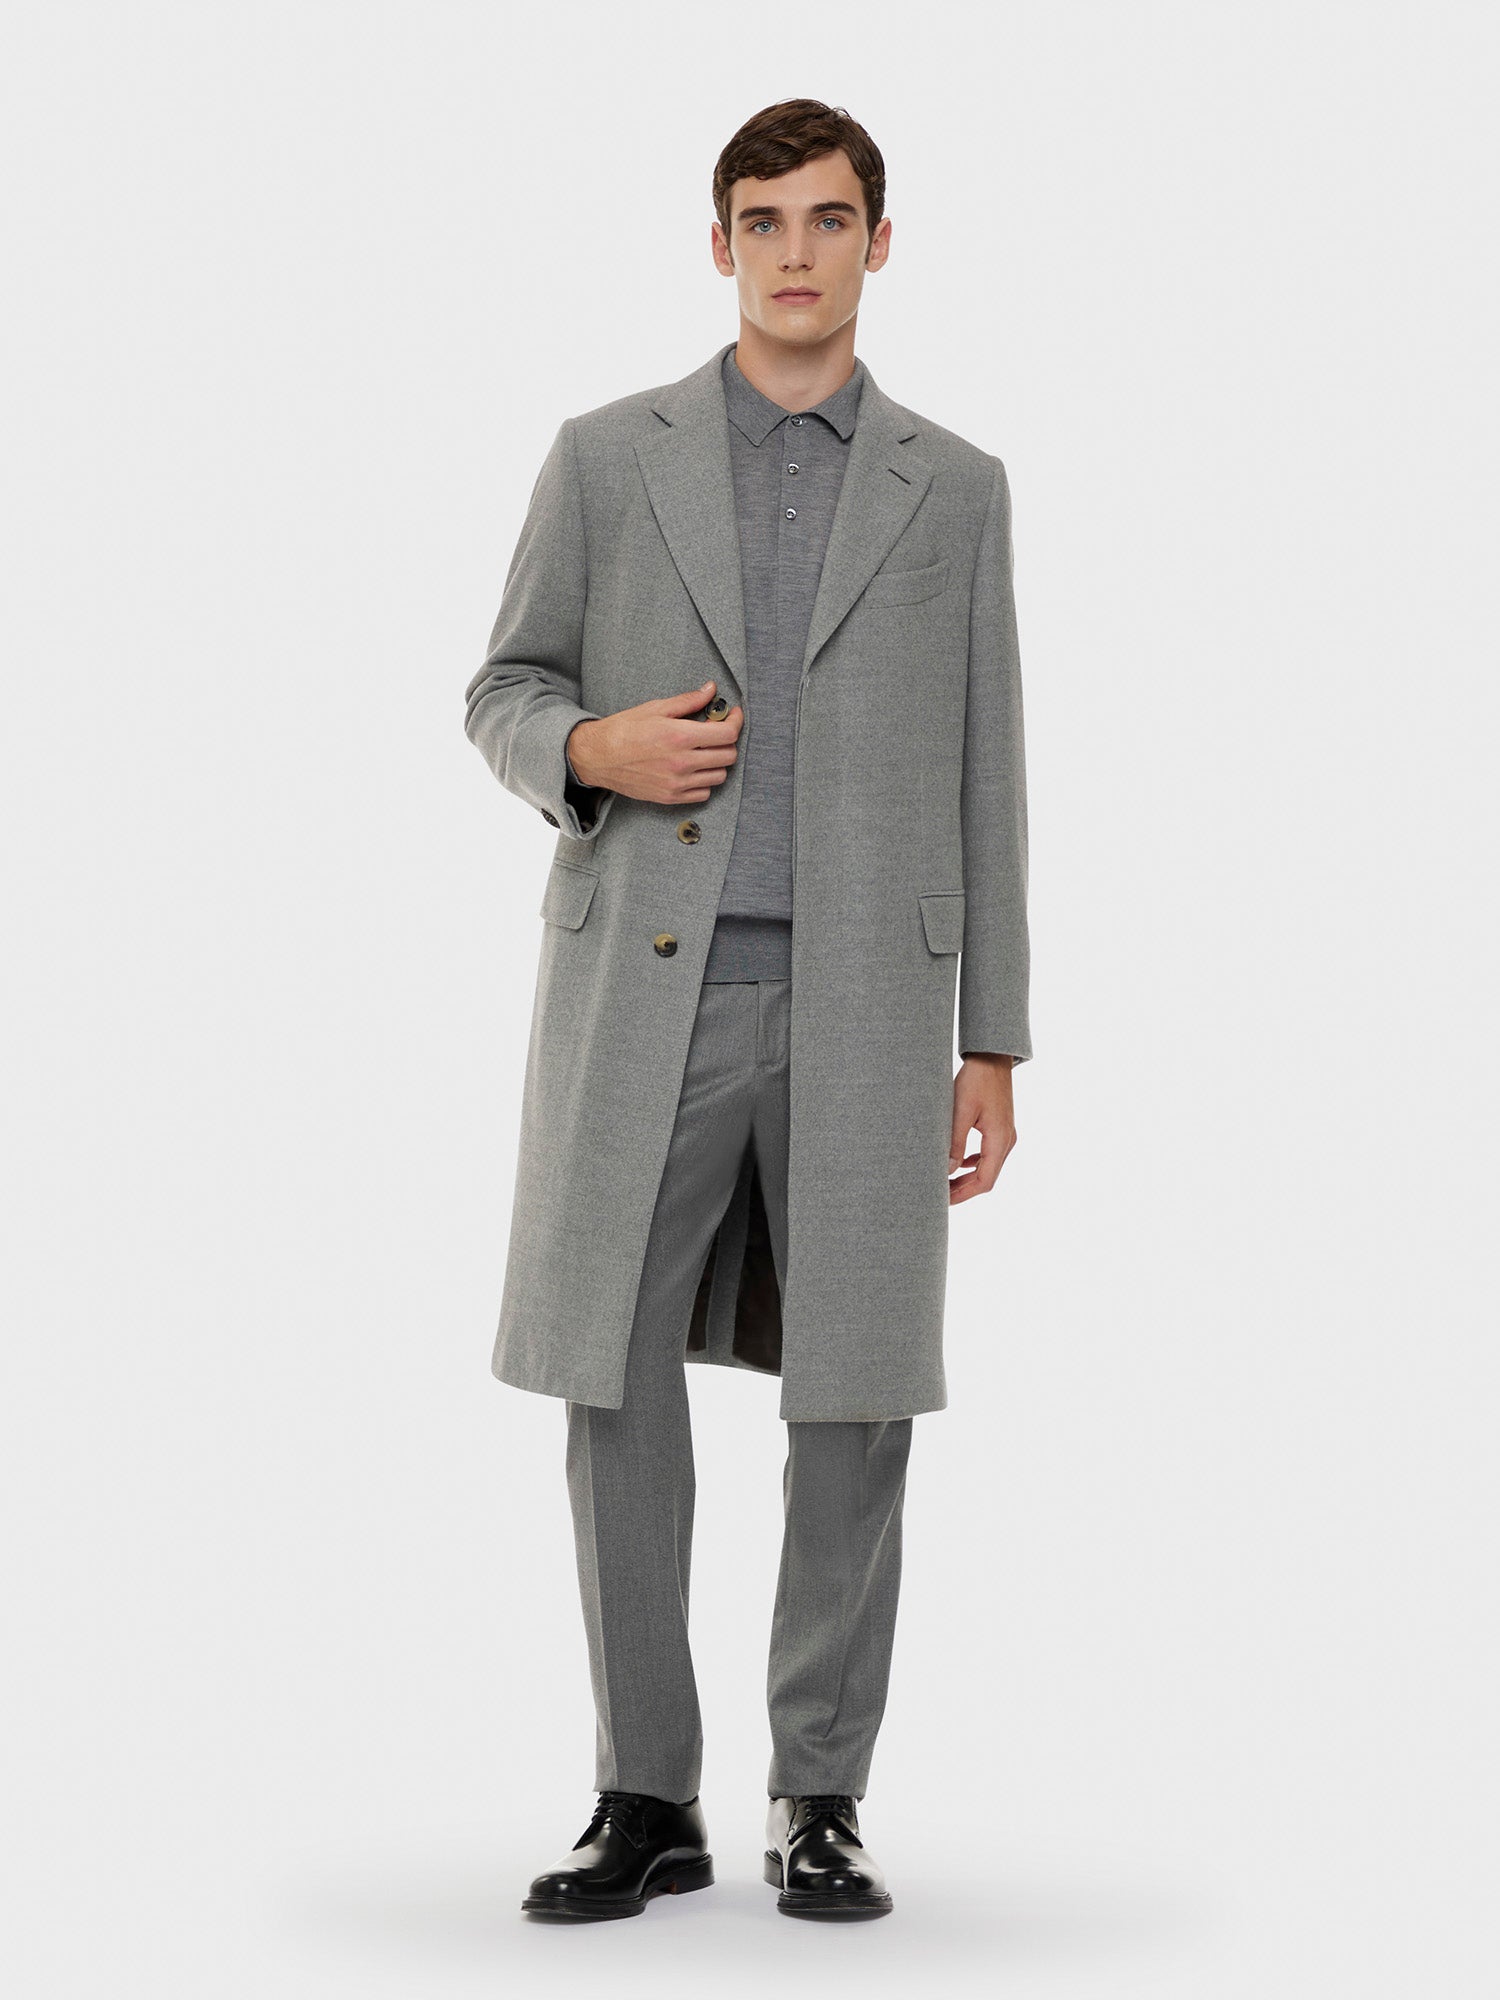 Caruso Menswear Abbigliamento Uomo Polo a maniche lunghe in lana, seta e cashmere grigia total look